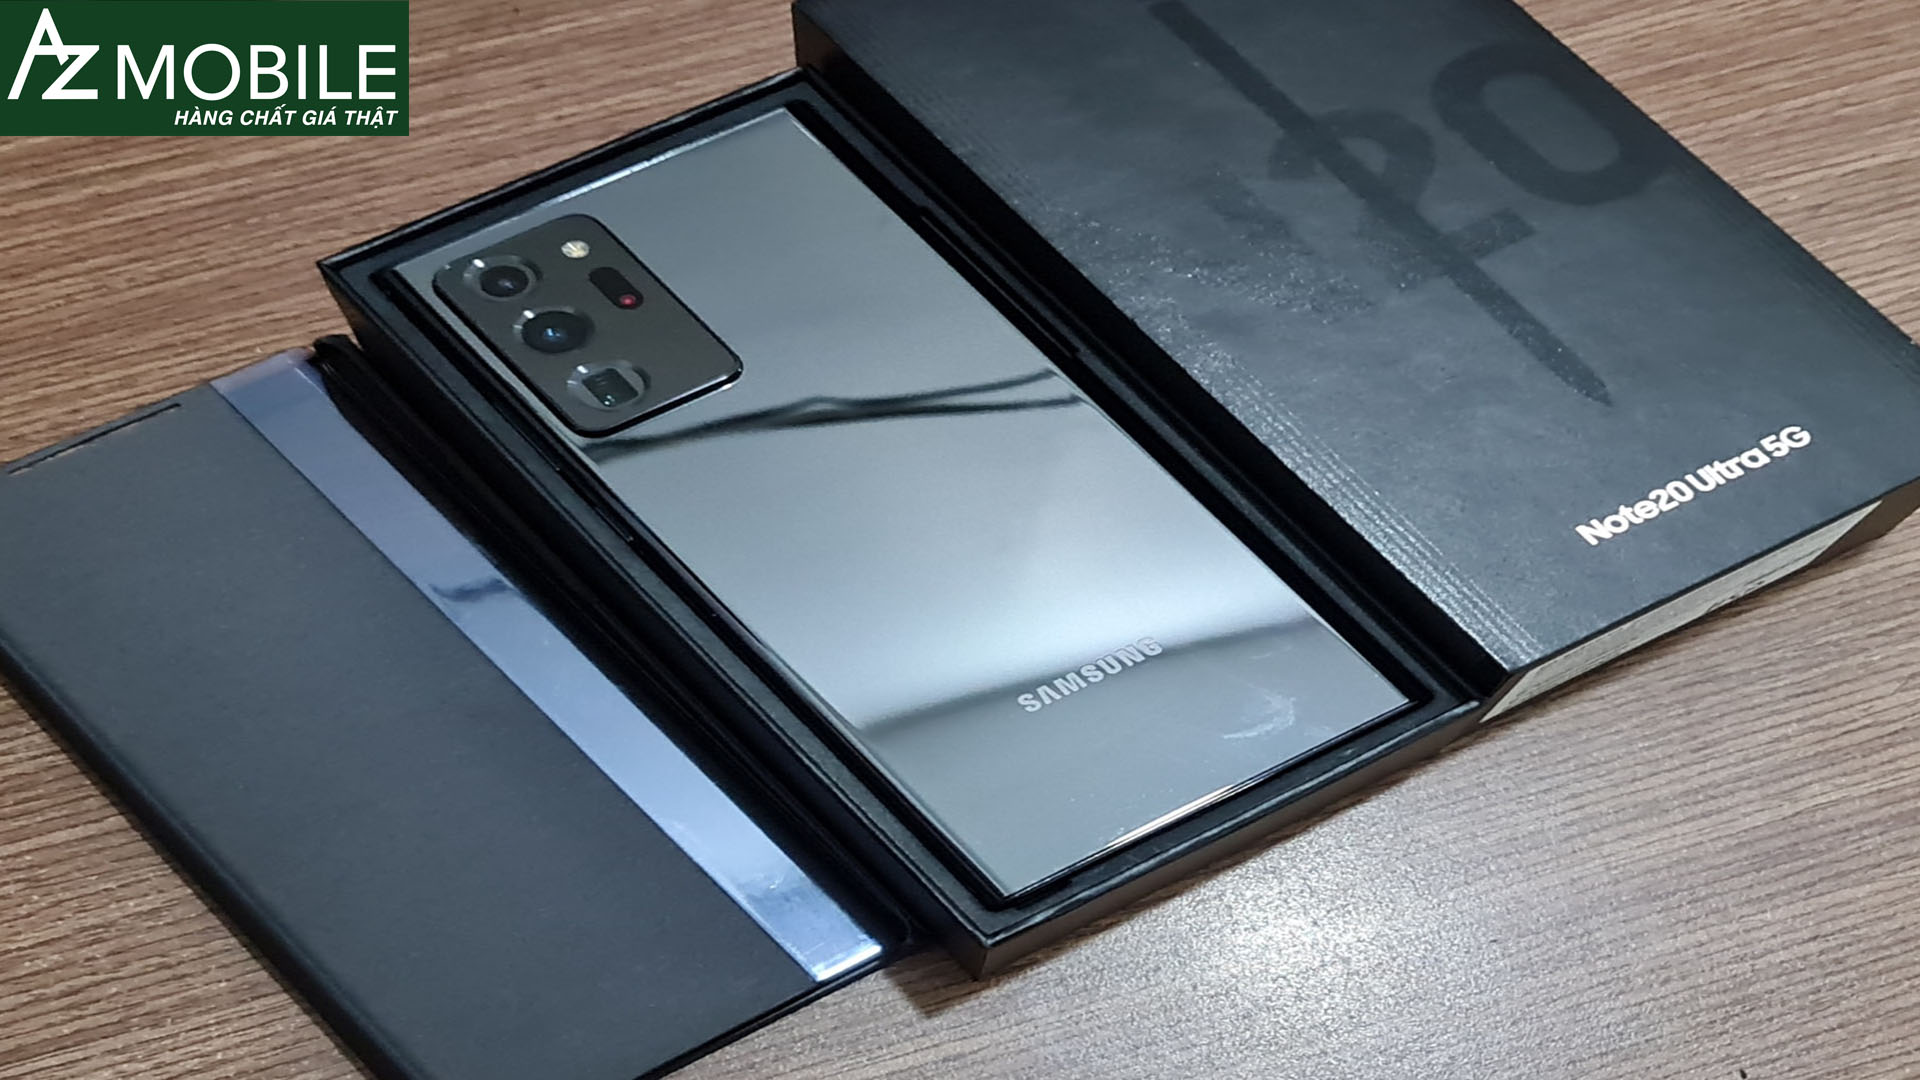 Galaxy Note 20 Ultra 5G Hàn Quốc chip Snap 865+ Likenew